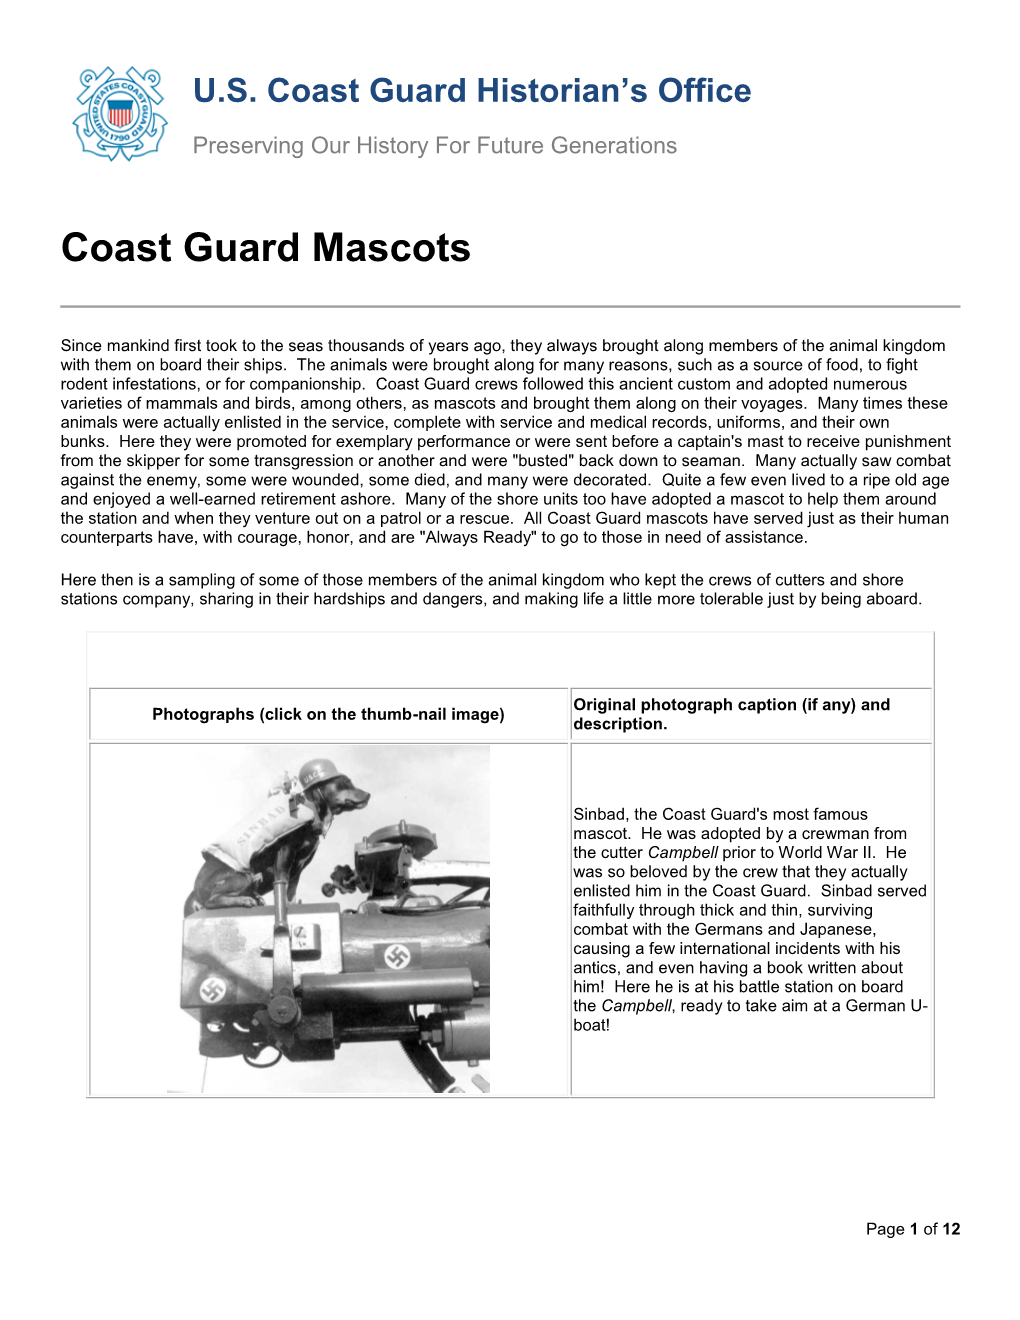 Coast Guard Mascots